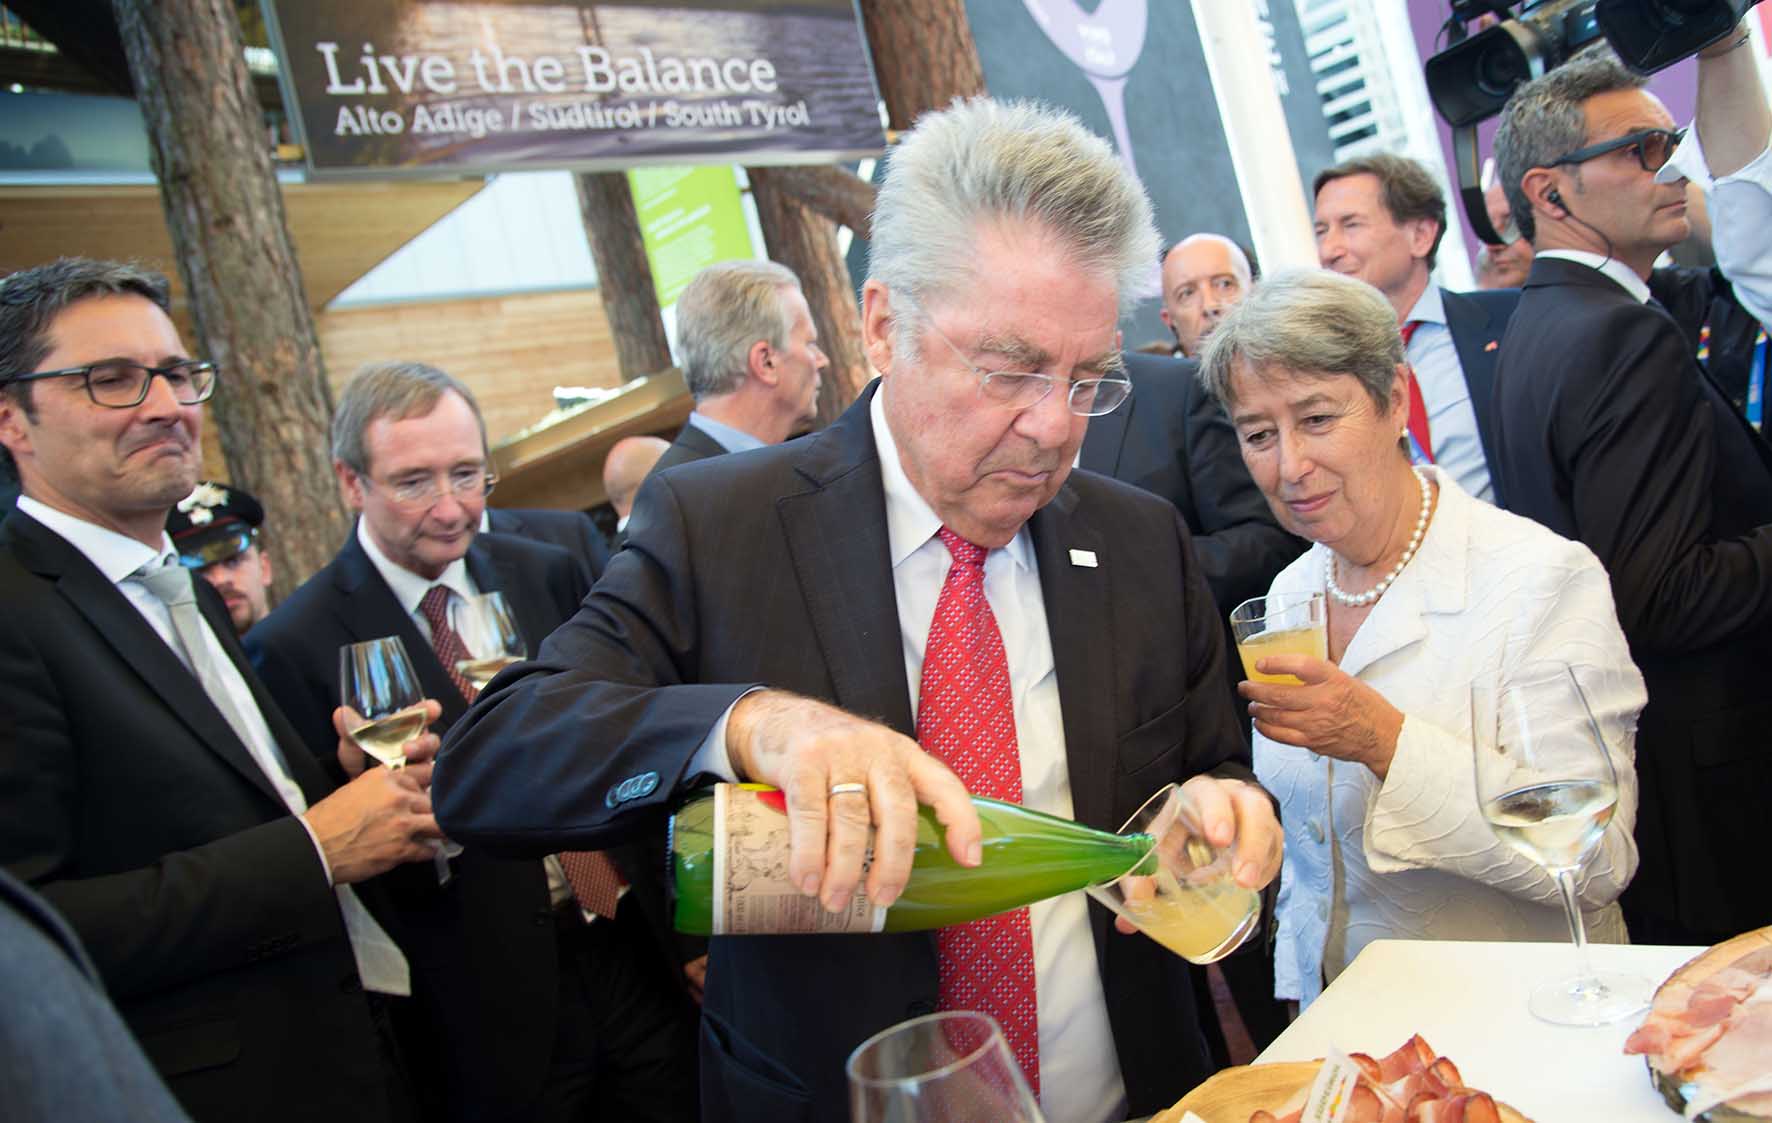 Expo 2015 stand alto adige president erepubblica austria Fischer si serve da bere